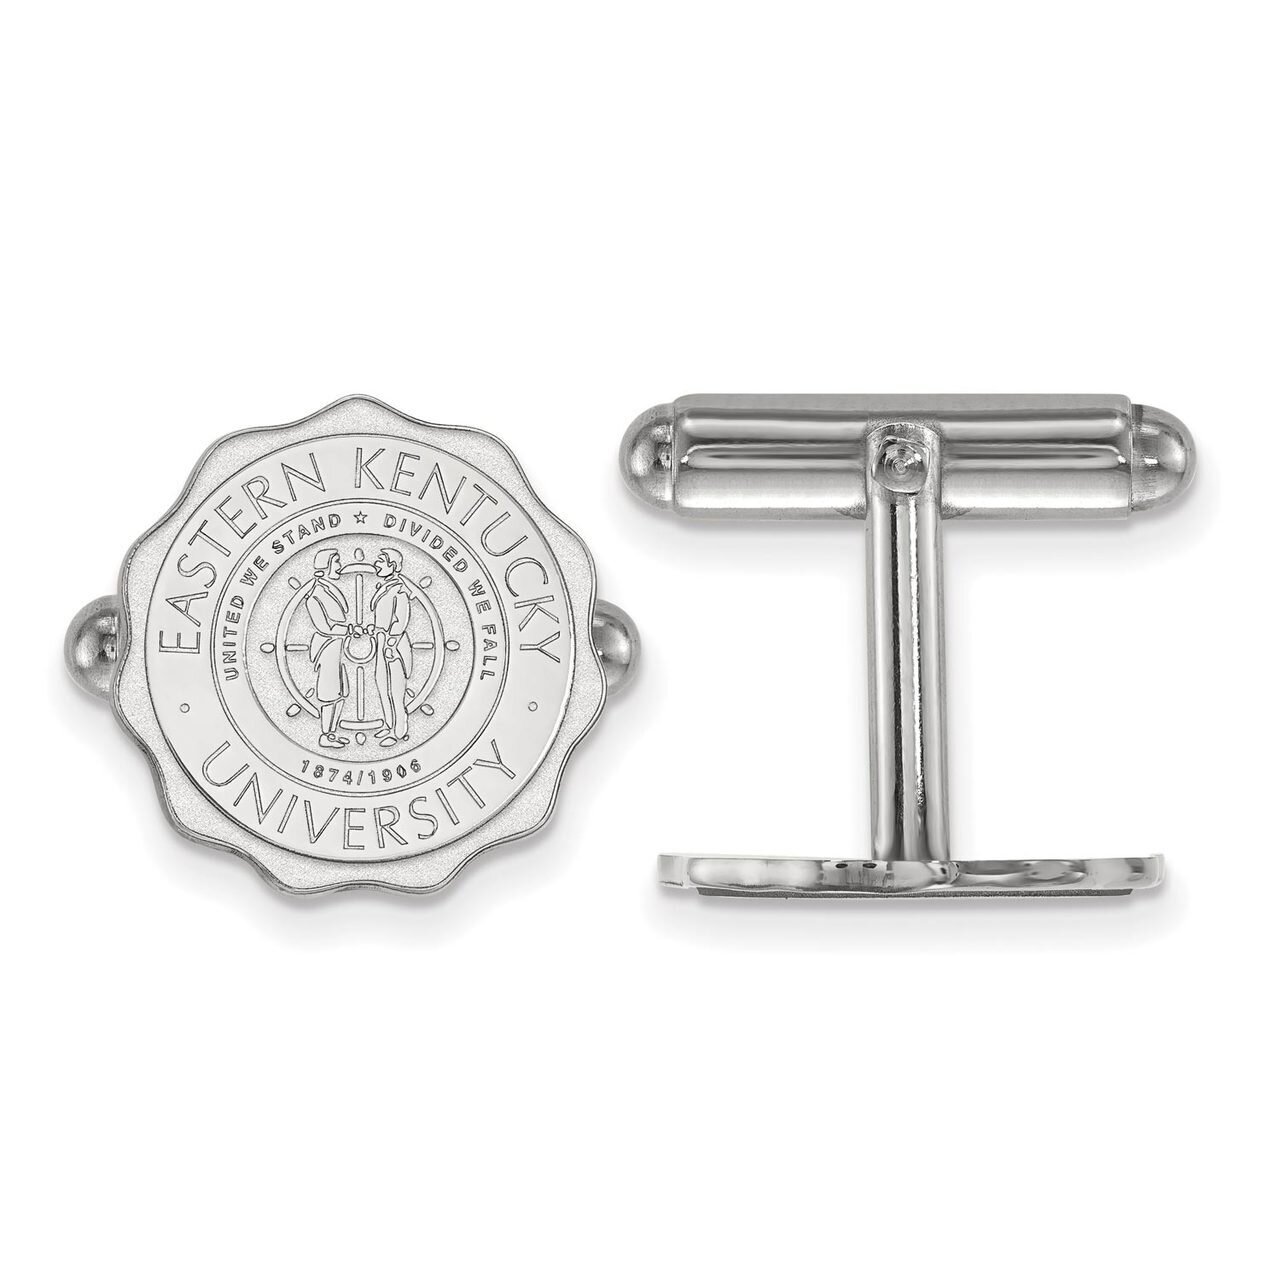 Eastern Kentucky University Crest Cuff Link Sterling Silver SS018EKU